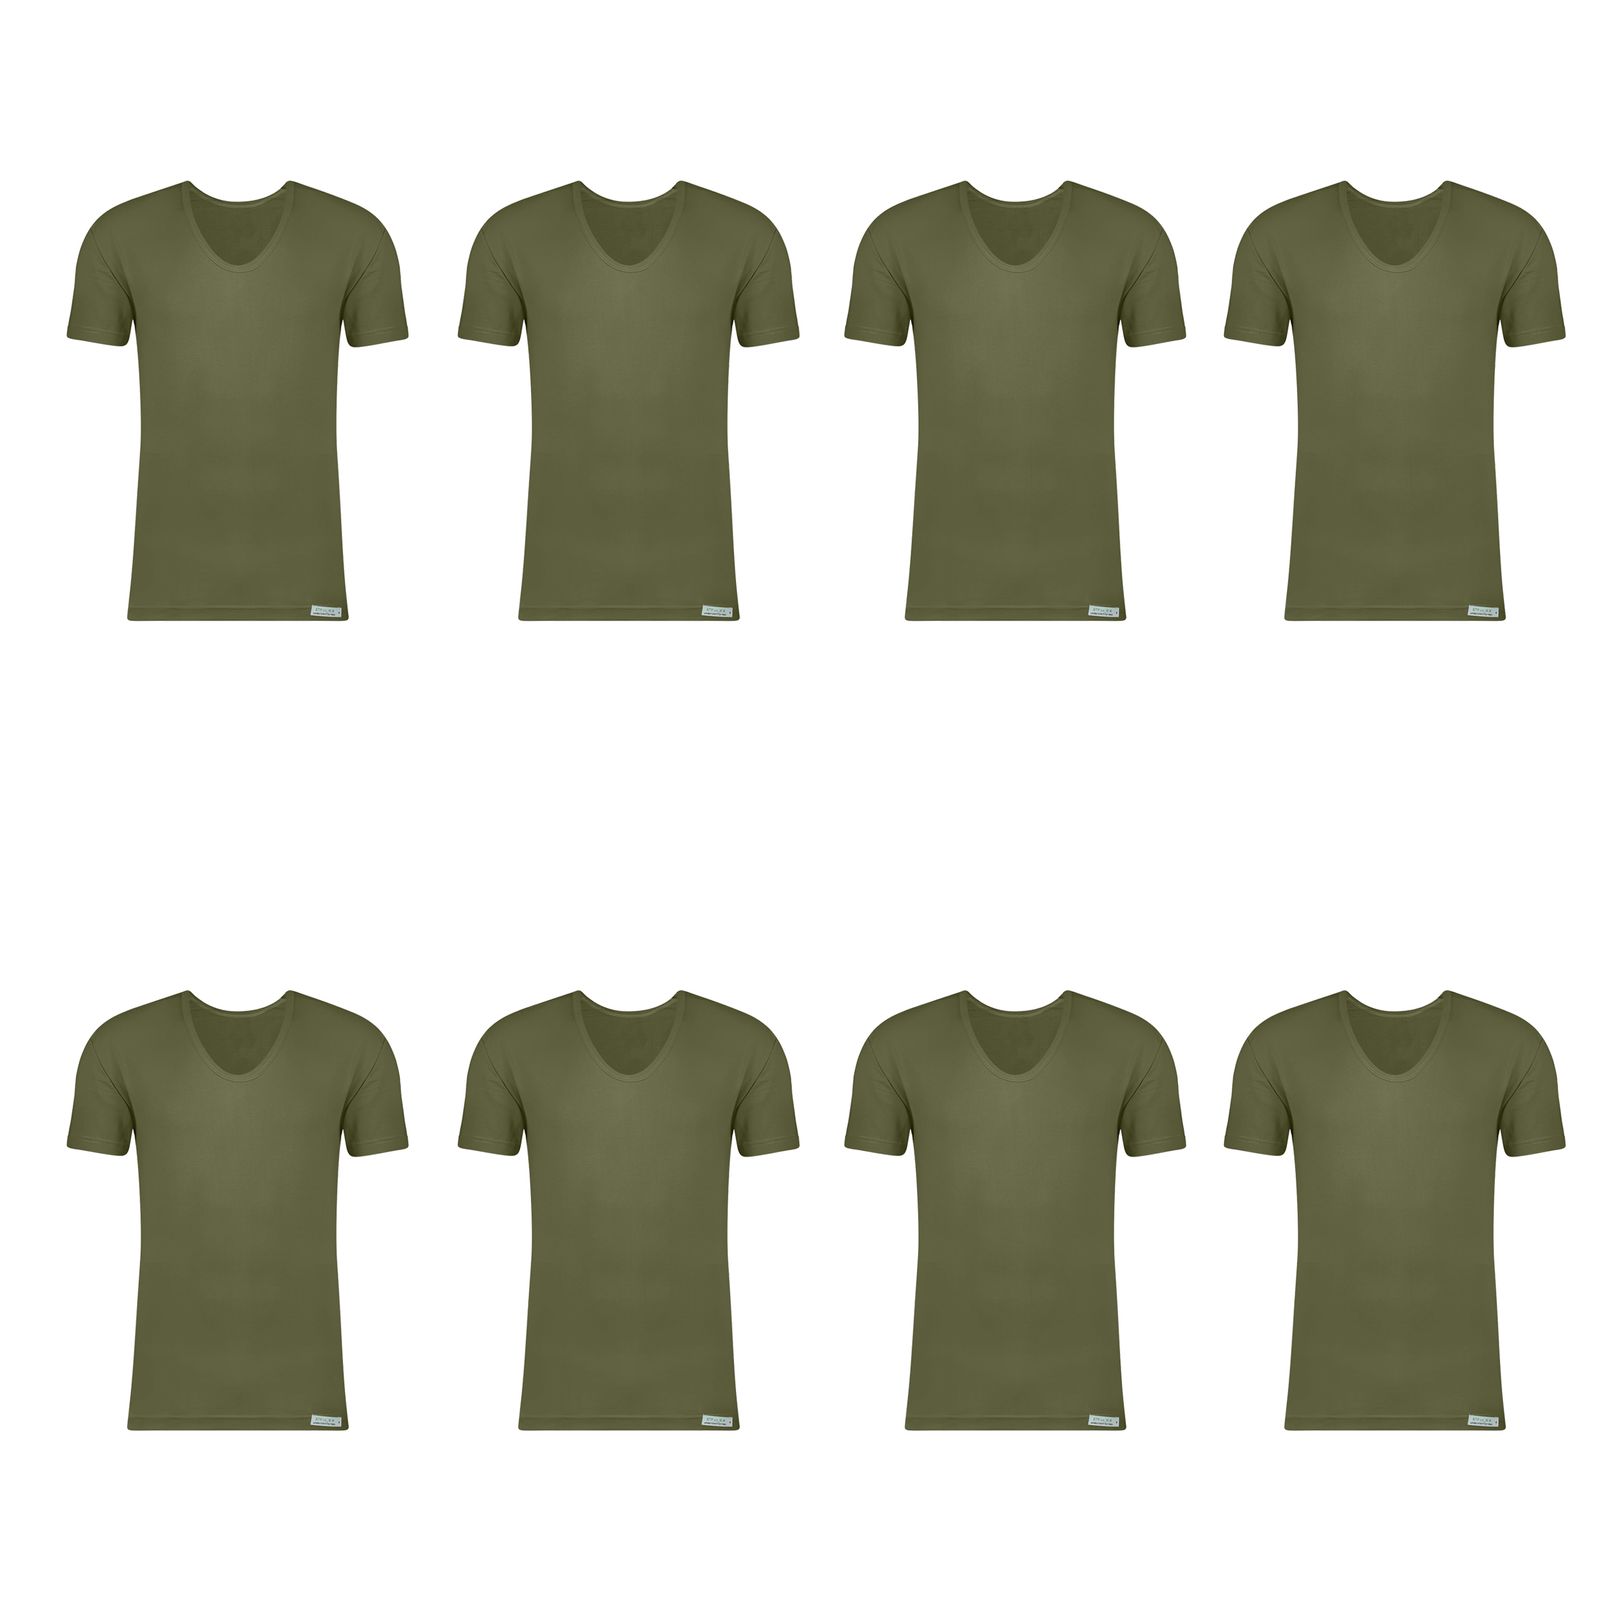 زیرپوش آستین دار مردانه برهان تن پوش مدل 6-02 بسته 8 عددی رنگ سبز